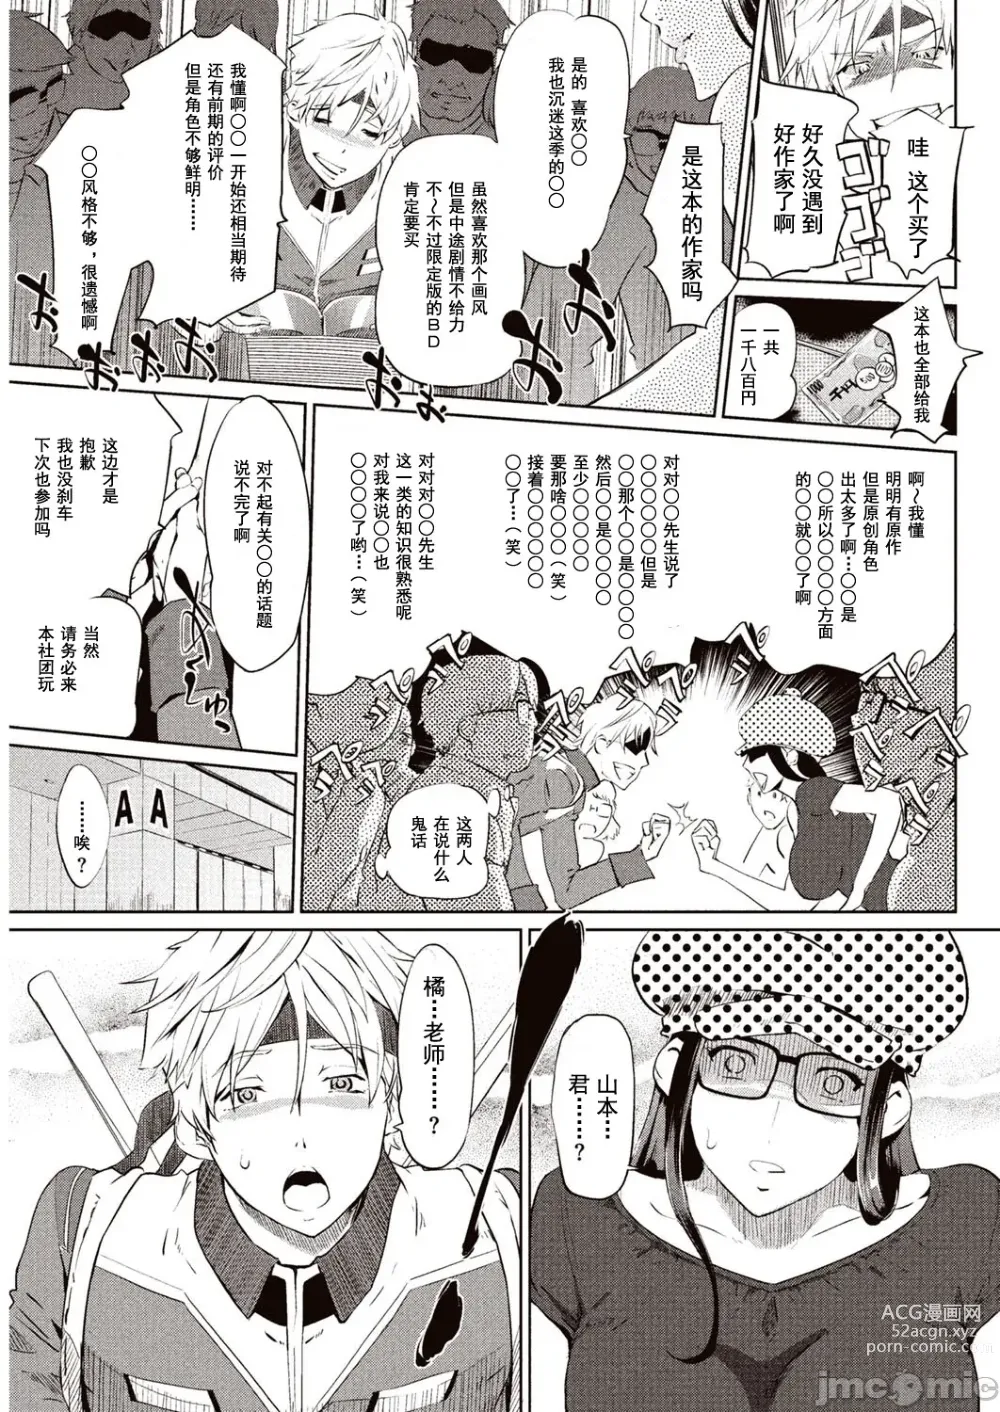 Page 4 of manga 賣作社團的招待券